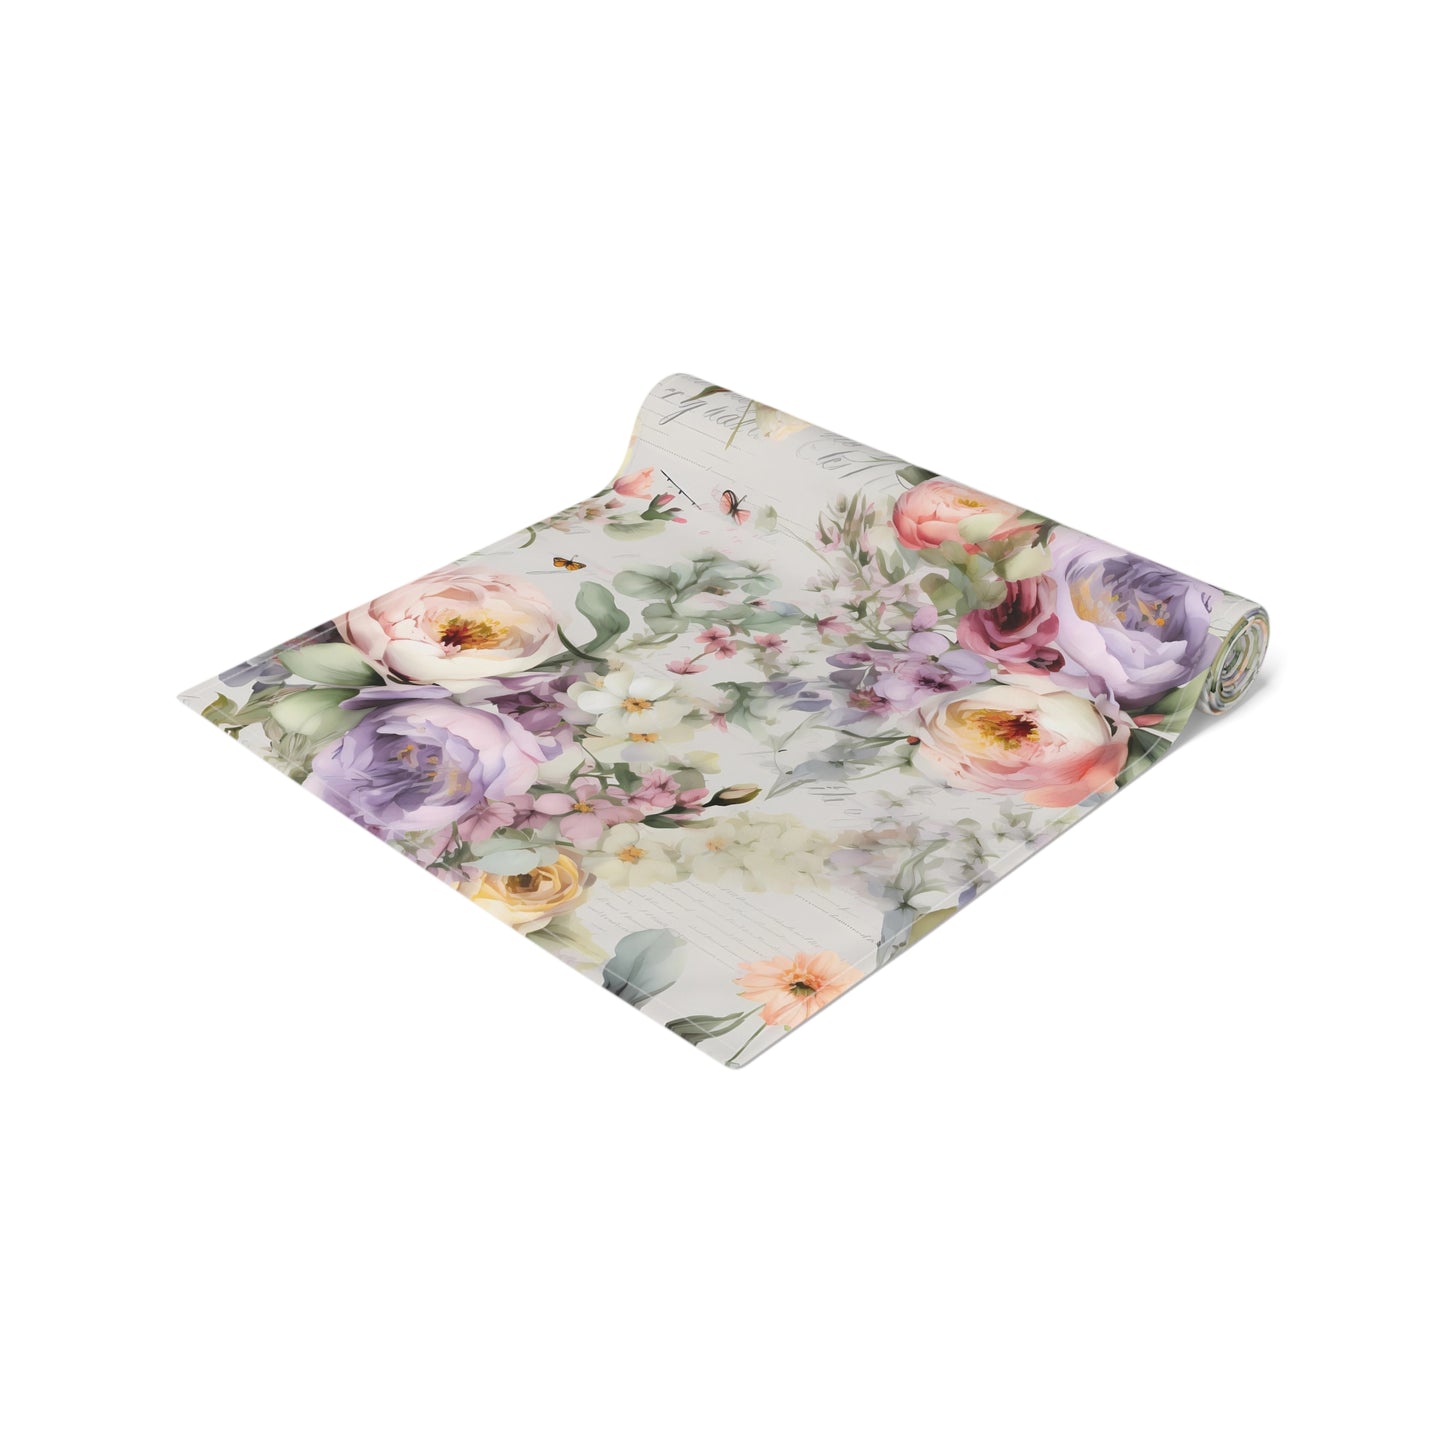 Floral Table Runner / Purple Flower Table Runner